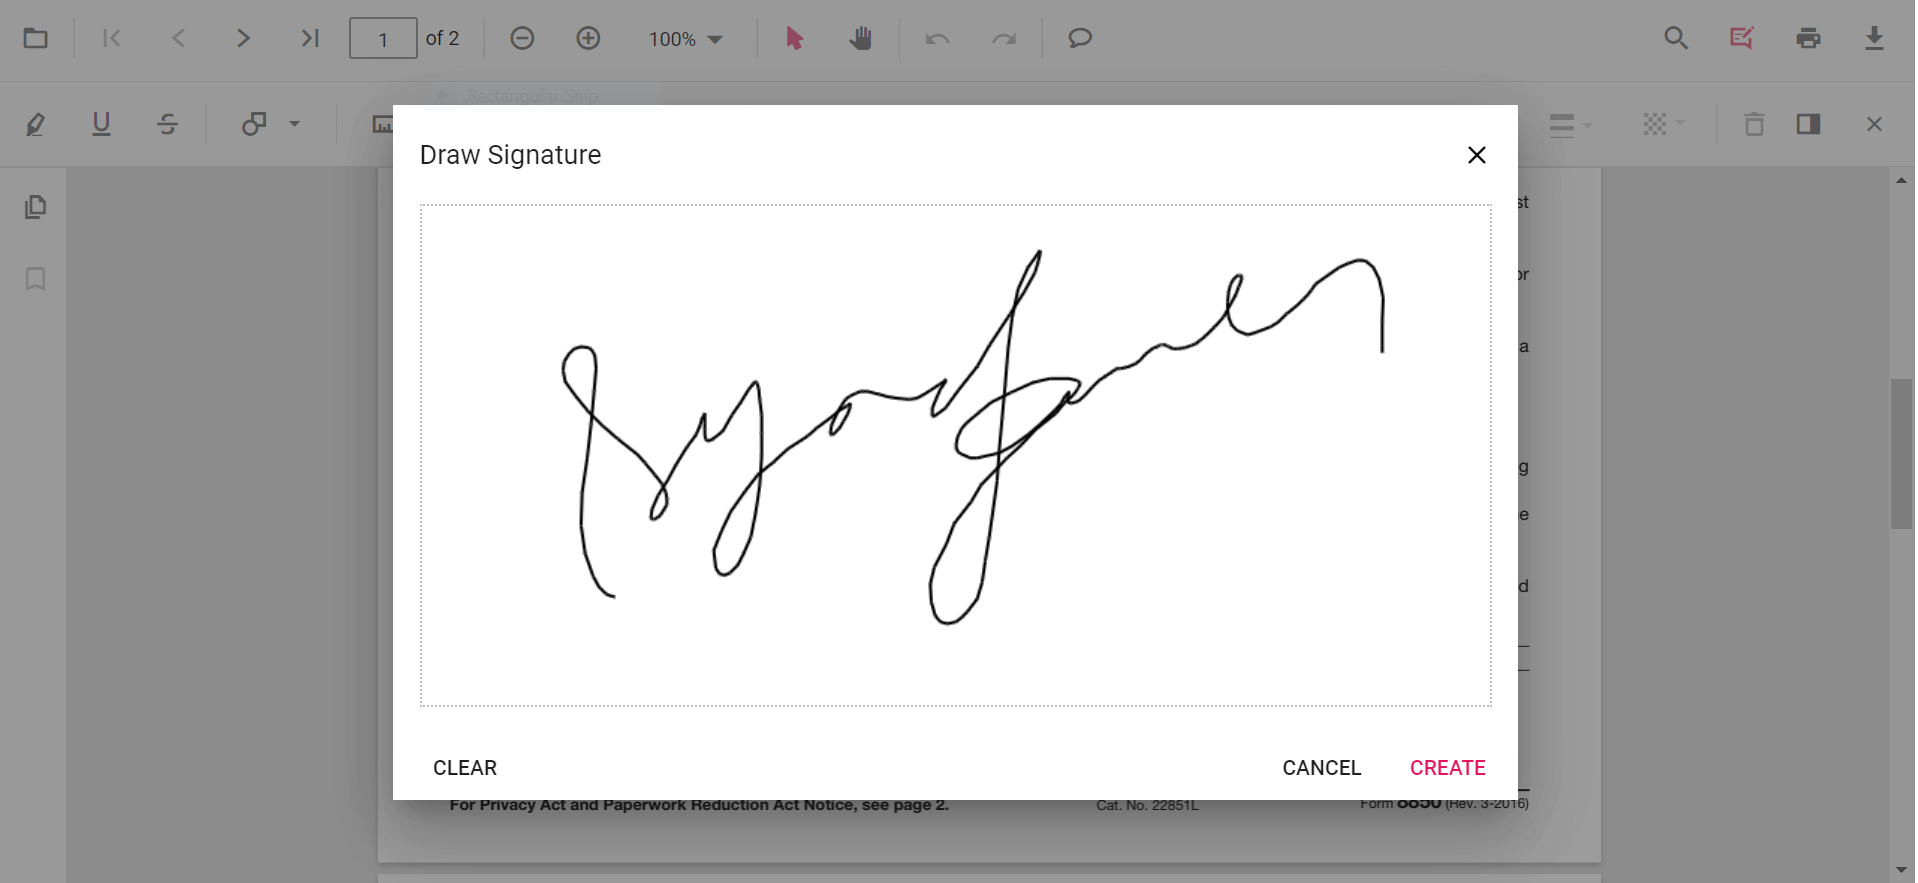 SignaturePanel